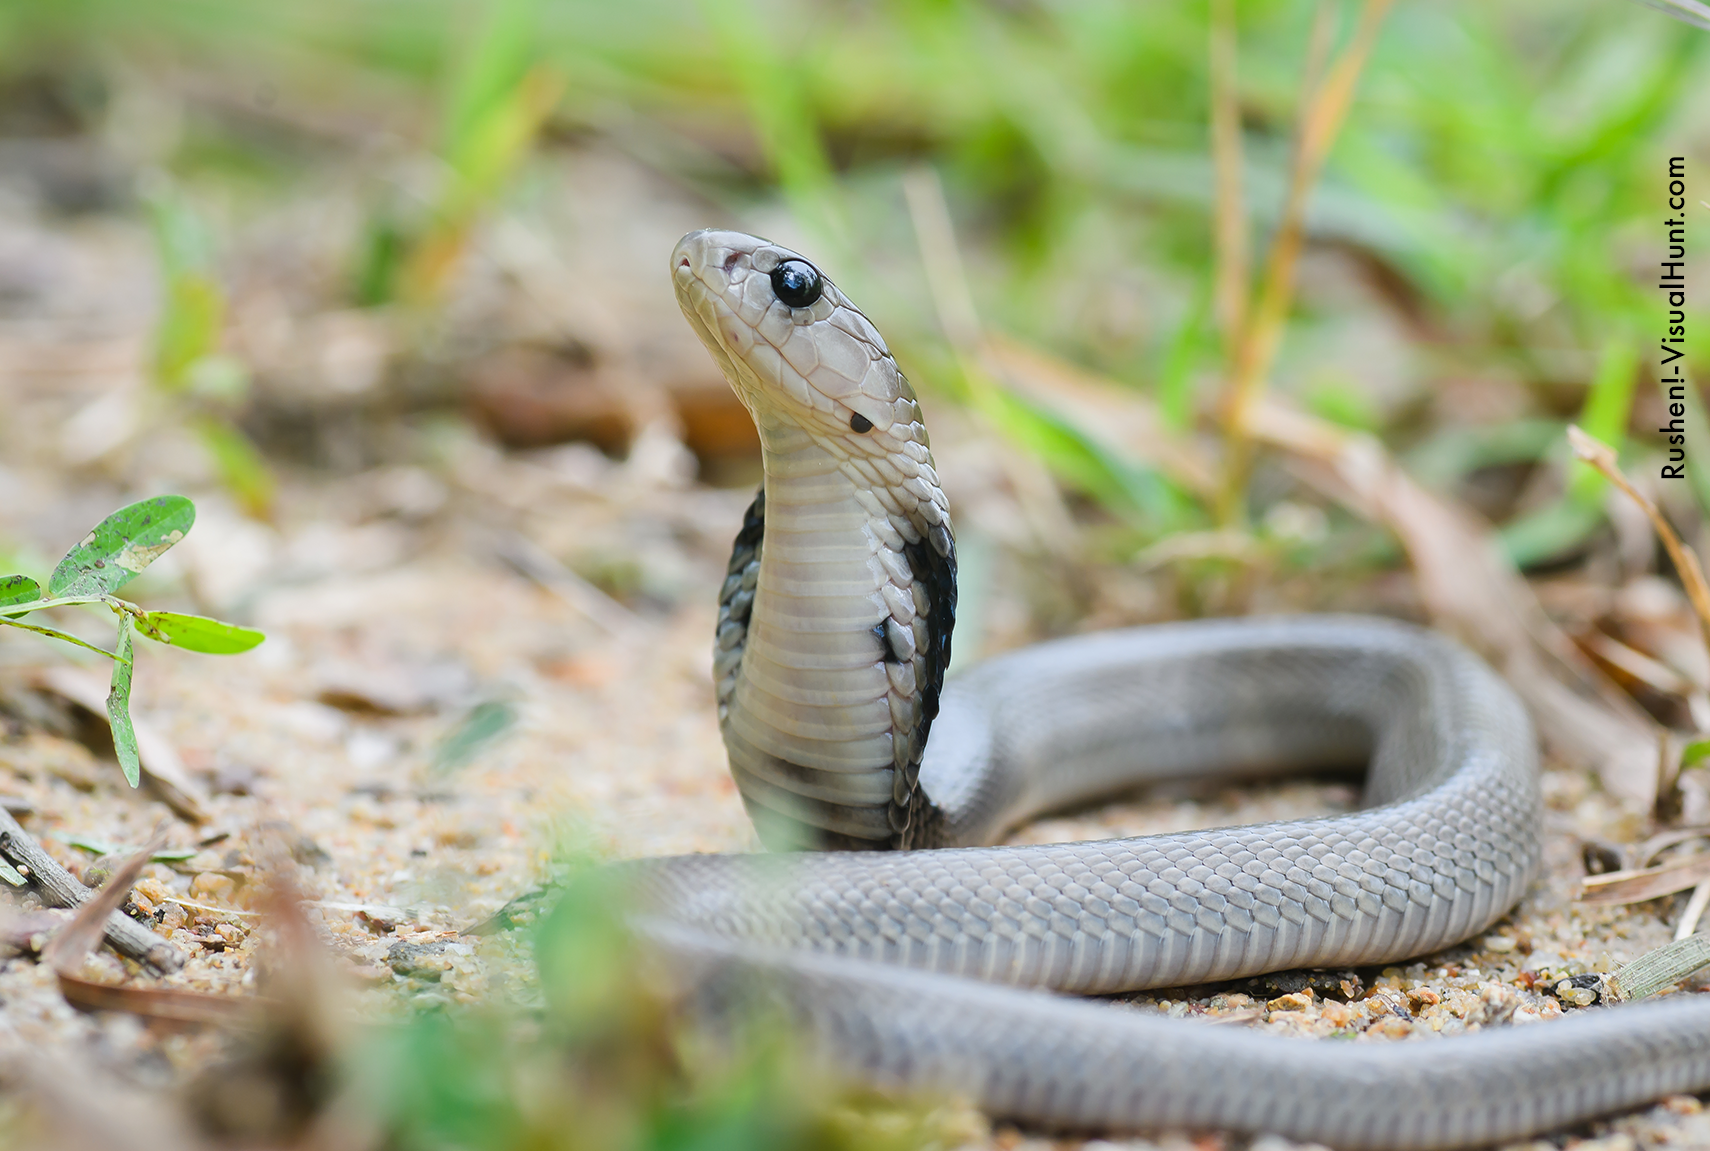 Dia Mundial da Cobra: elas são bons animais de estimação?